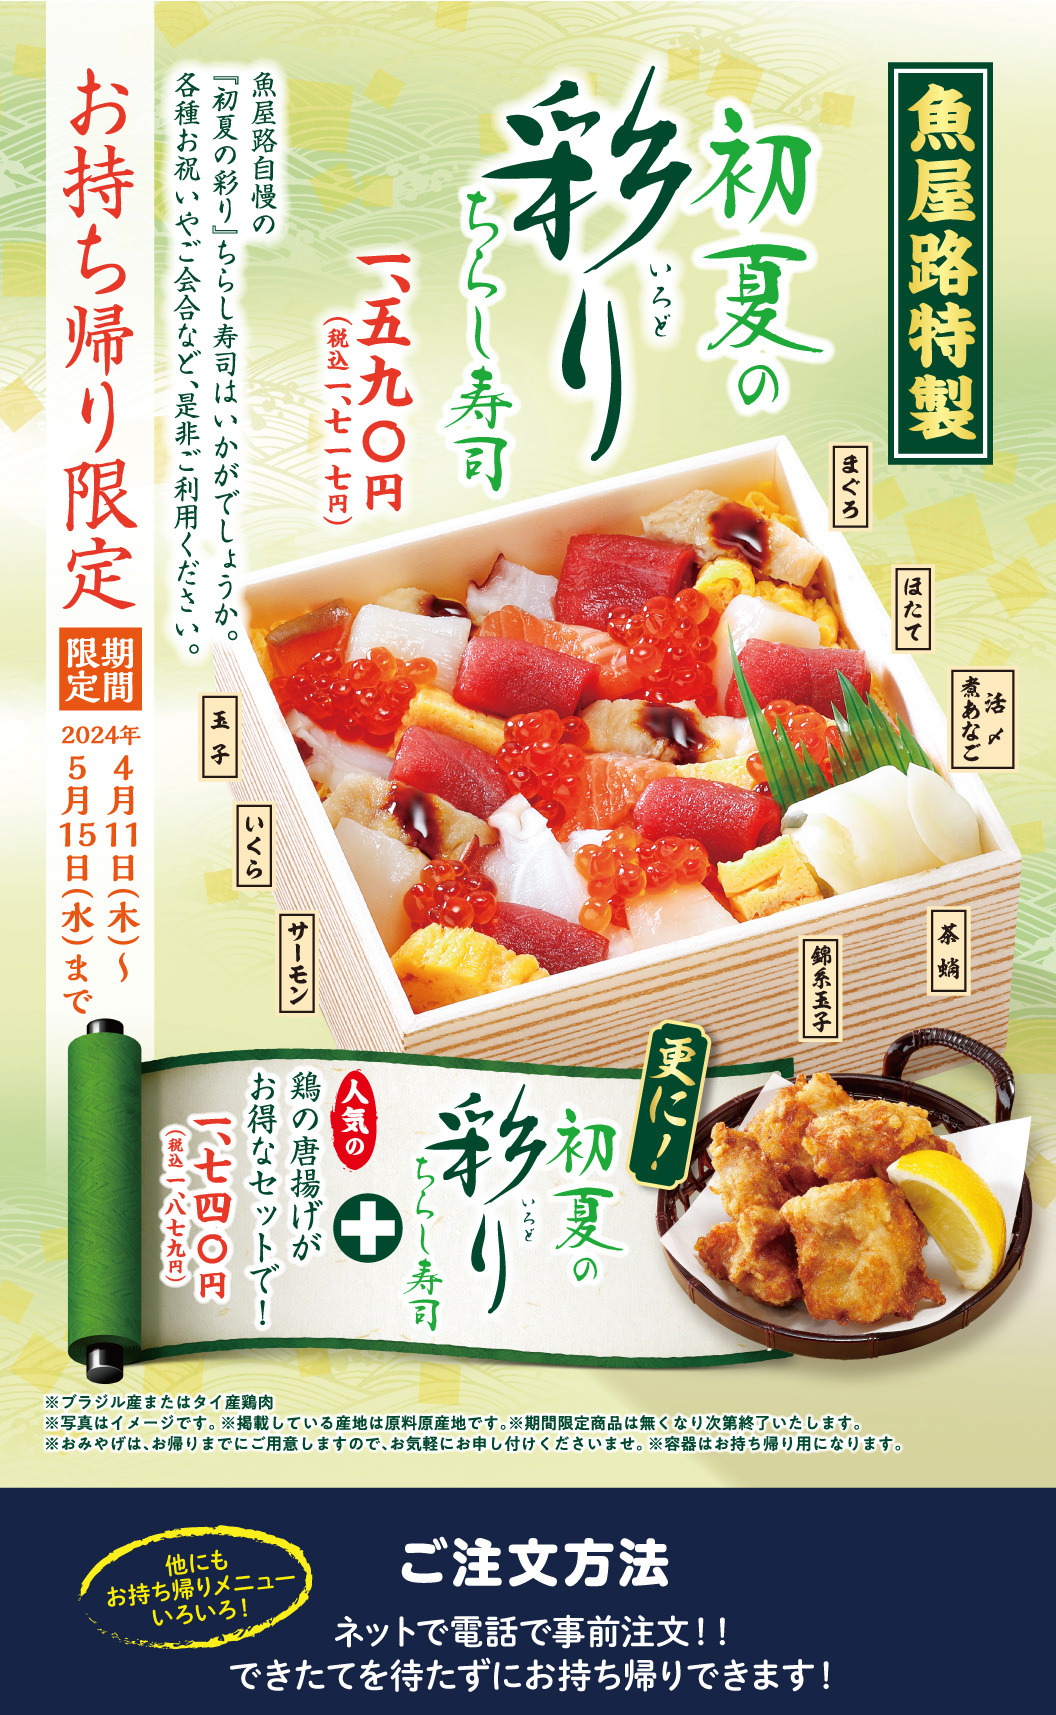 【魚屋路特製】初夏の彩ちらし寿司